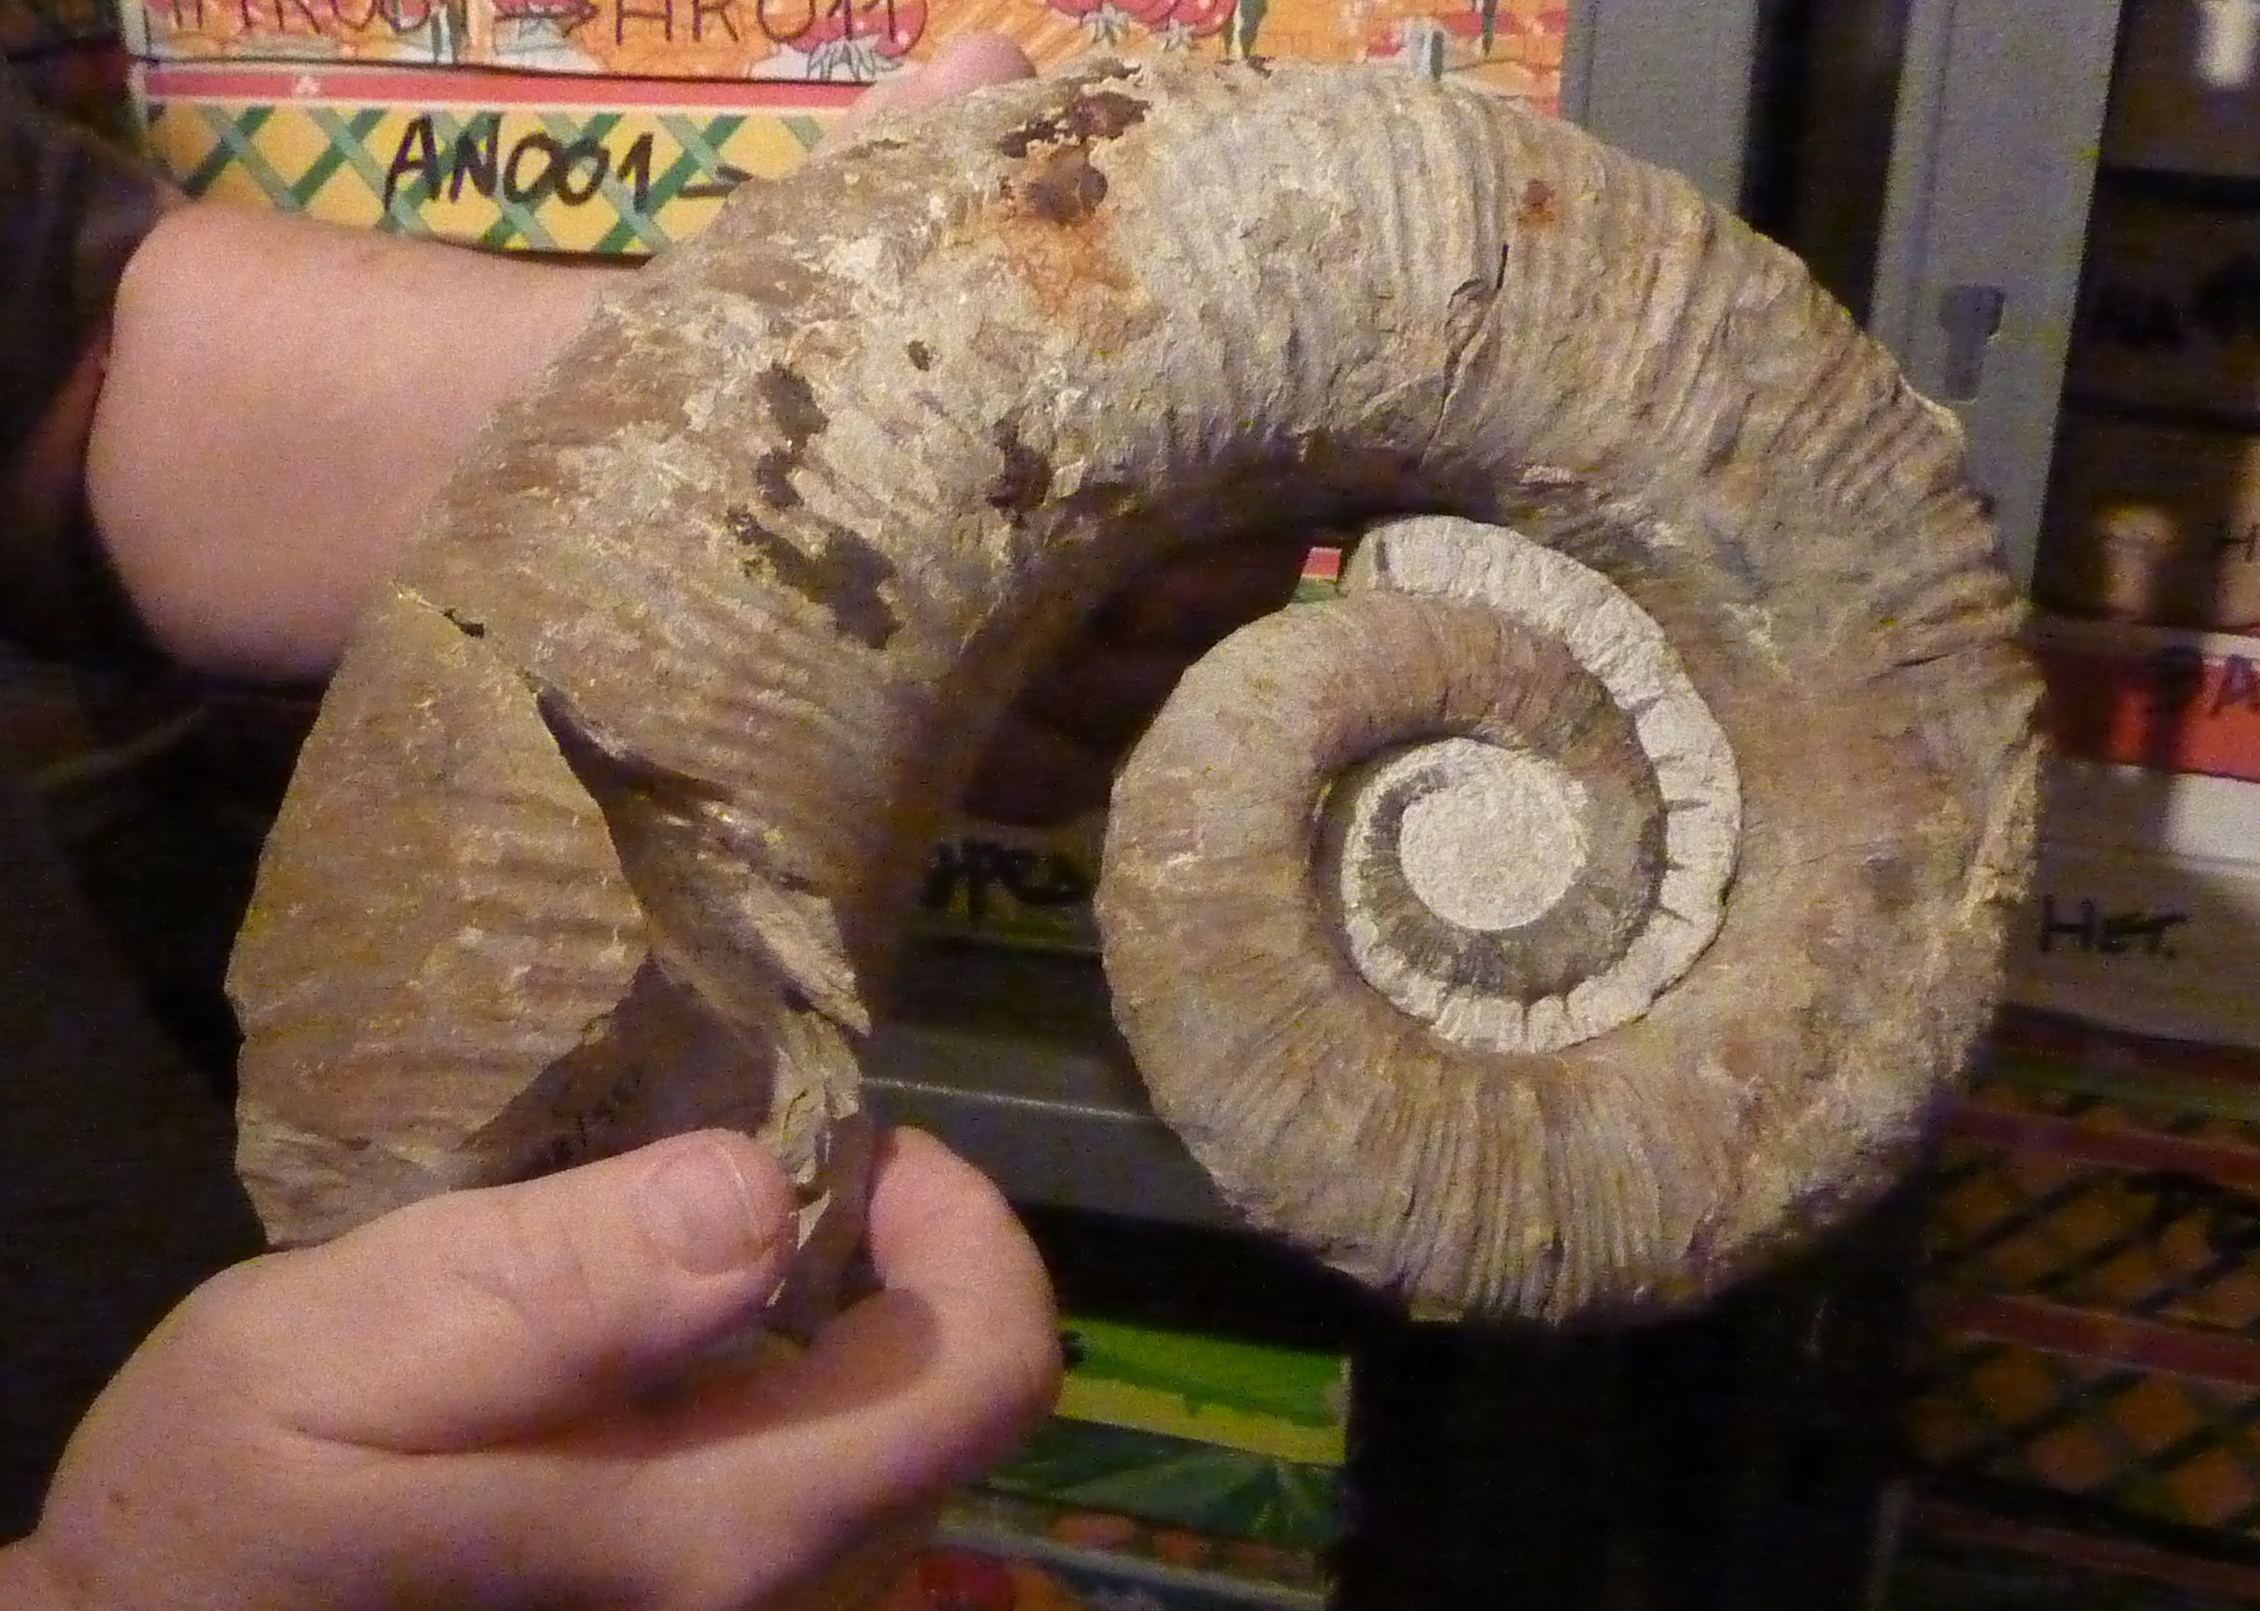 La commune de Barrème est riche en fossiles caractéristiques que sont les ammonites